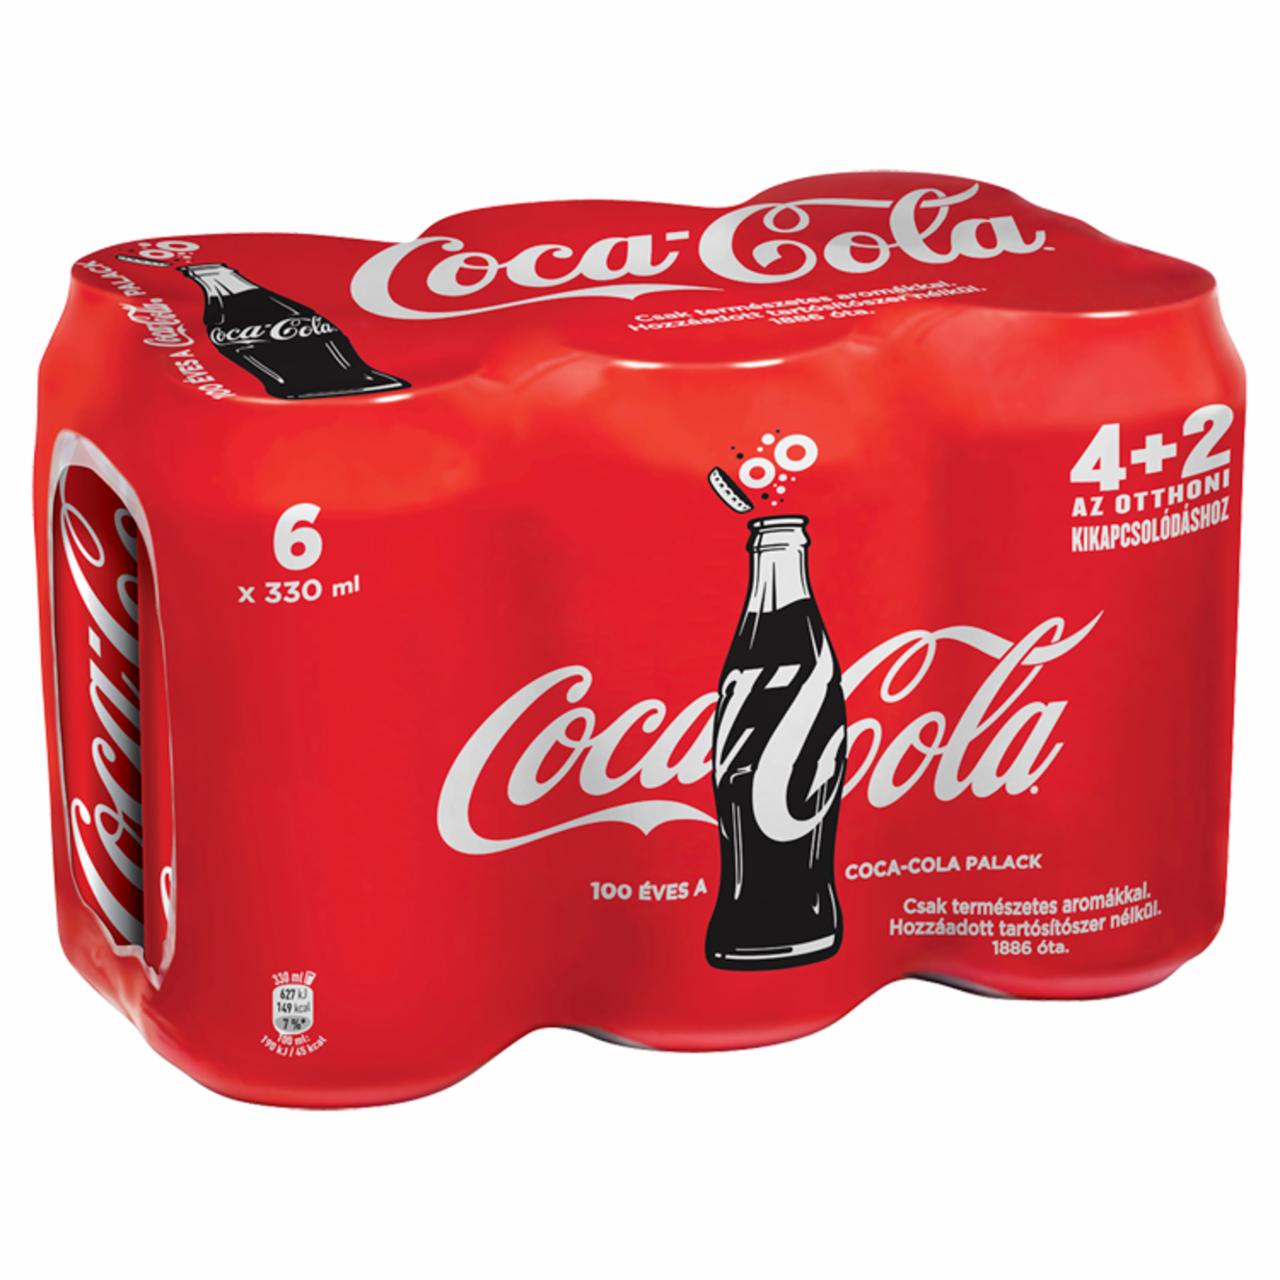 Képek - Coca-Cola colaízű szénsavas üdítőital 6 x 330 ml